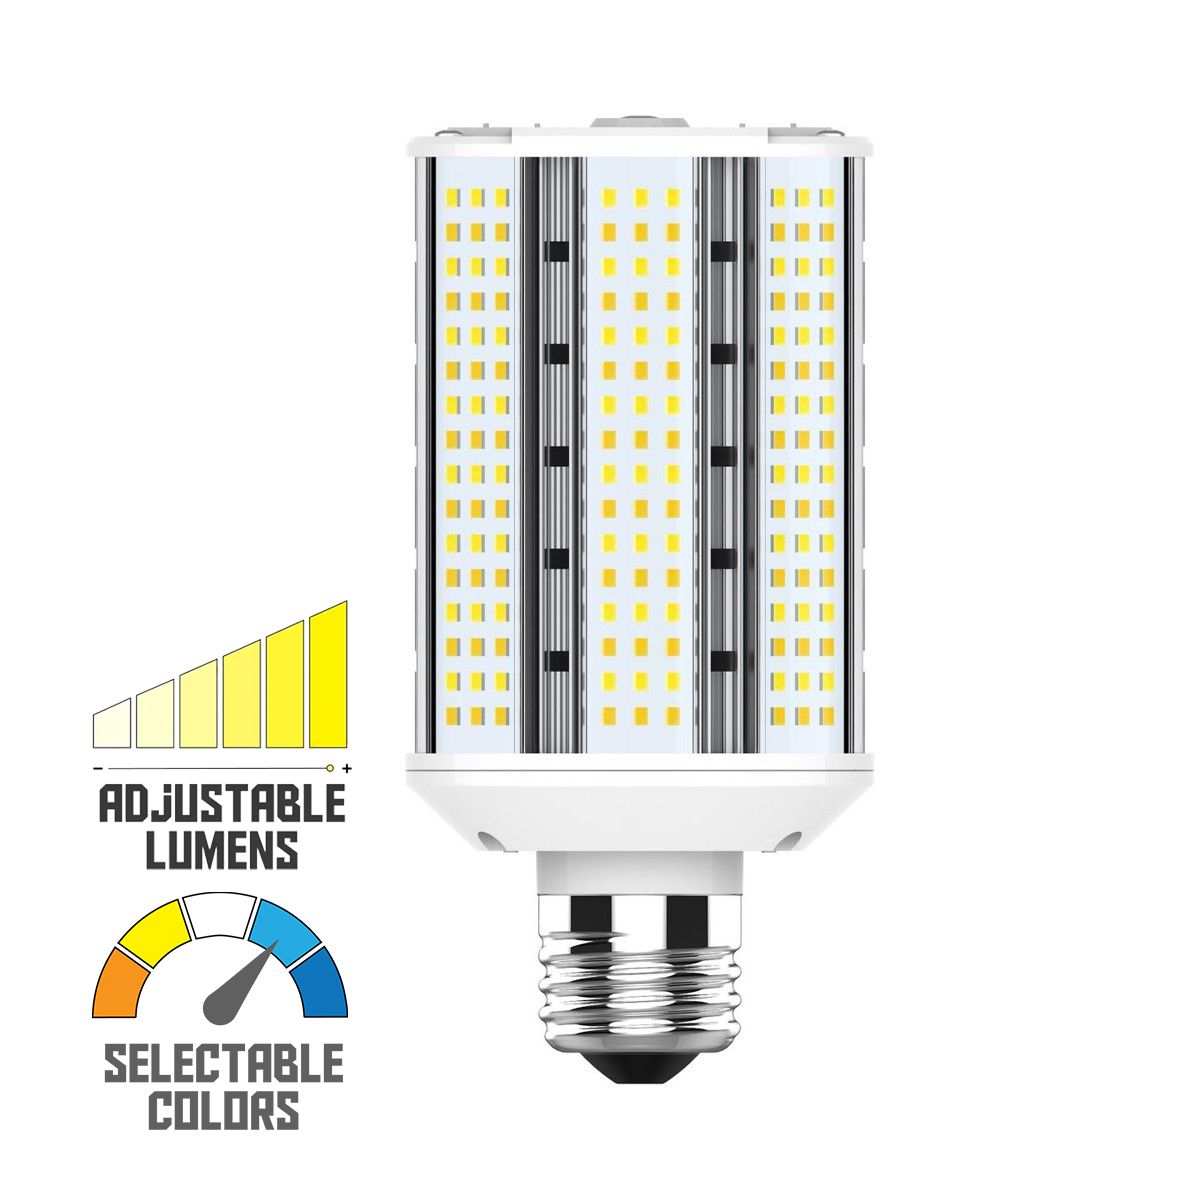 Hi-Pro Wall Pack/Shoebox LED Retrofit Lamp, 30W, 4500 Lumens, Selectable CCT, 30K/40K/50K, E26 Base, 120-277V